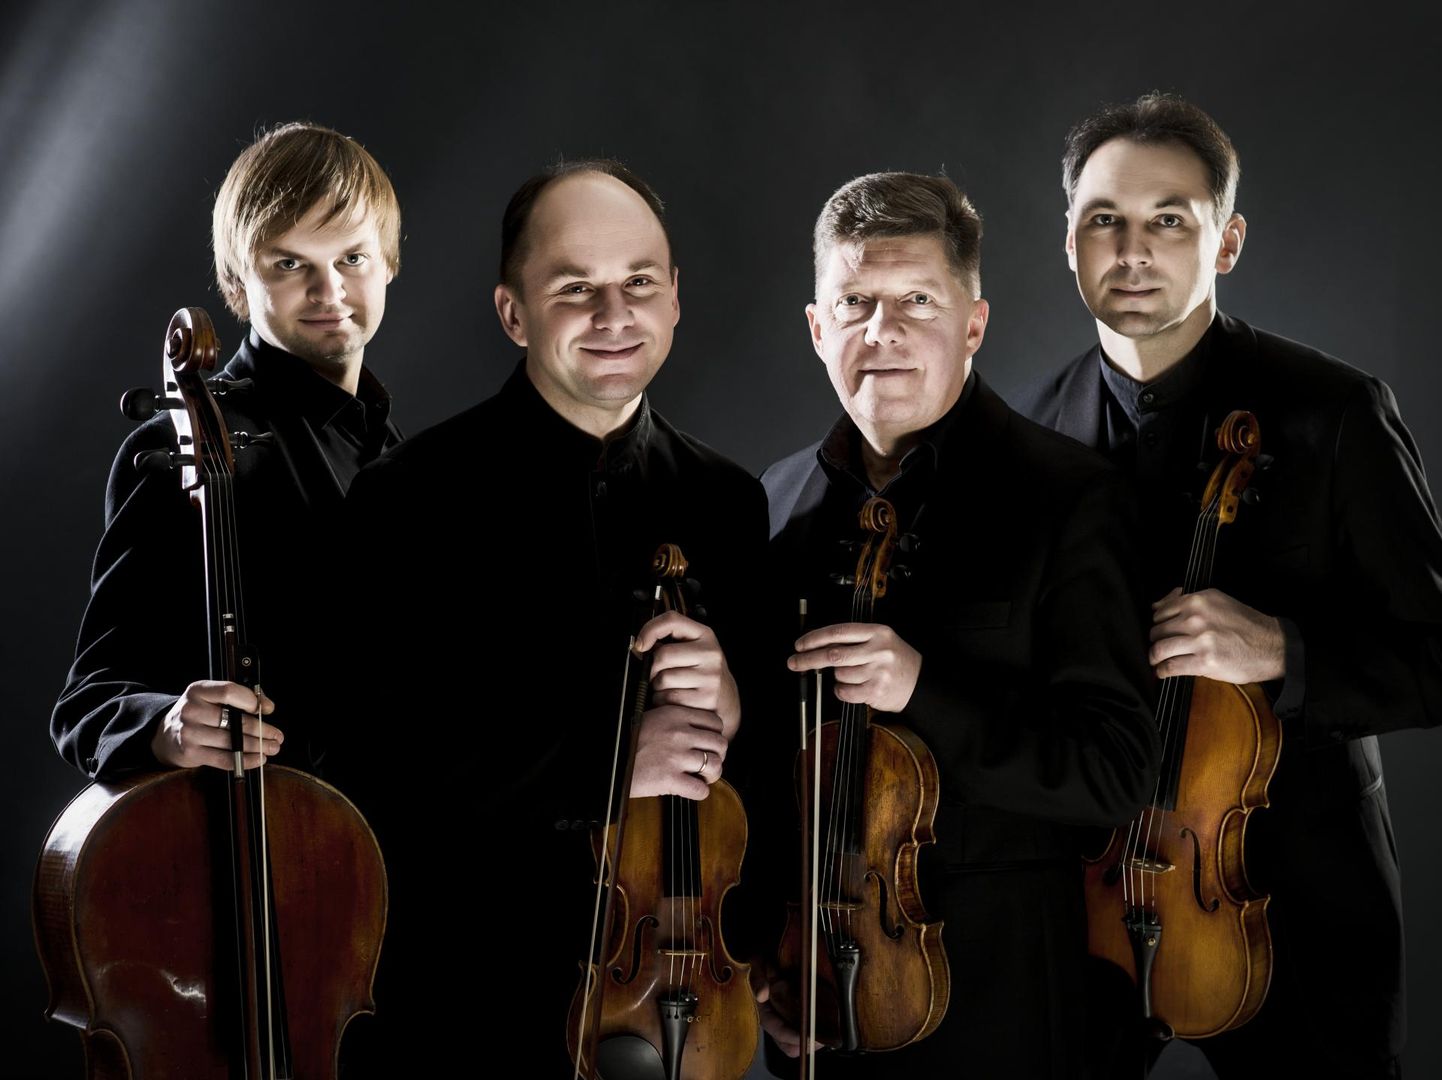 Hiina tuuri ära jätma pidanud Leedu keelpillikvartett tuleb nüüd muusikat tegema Audru–Tõstamaa maantee äärsesse kontserdisaali.